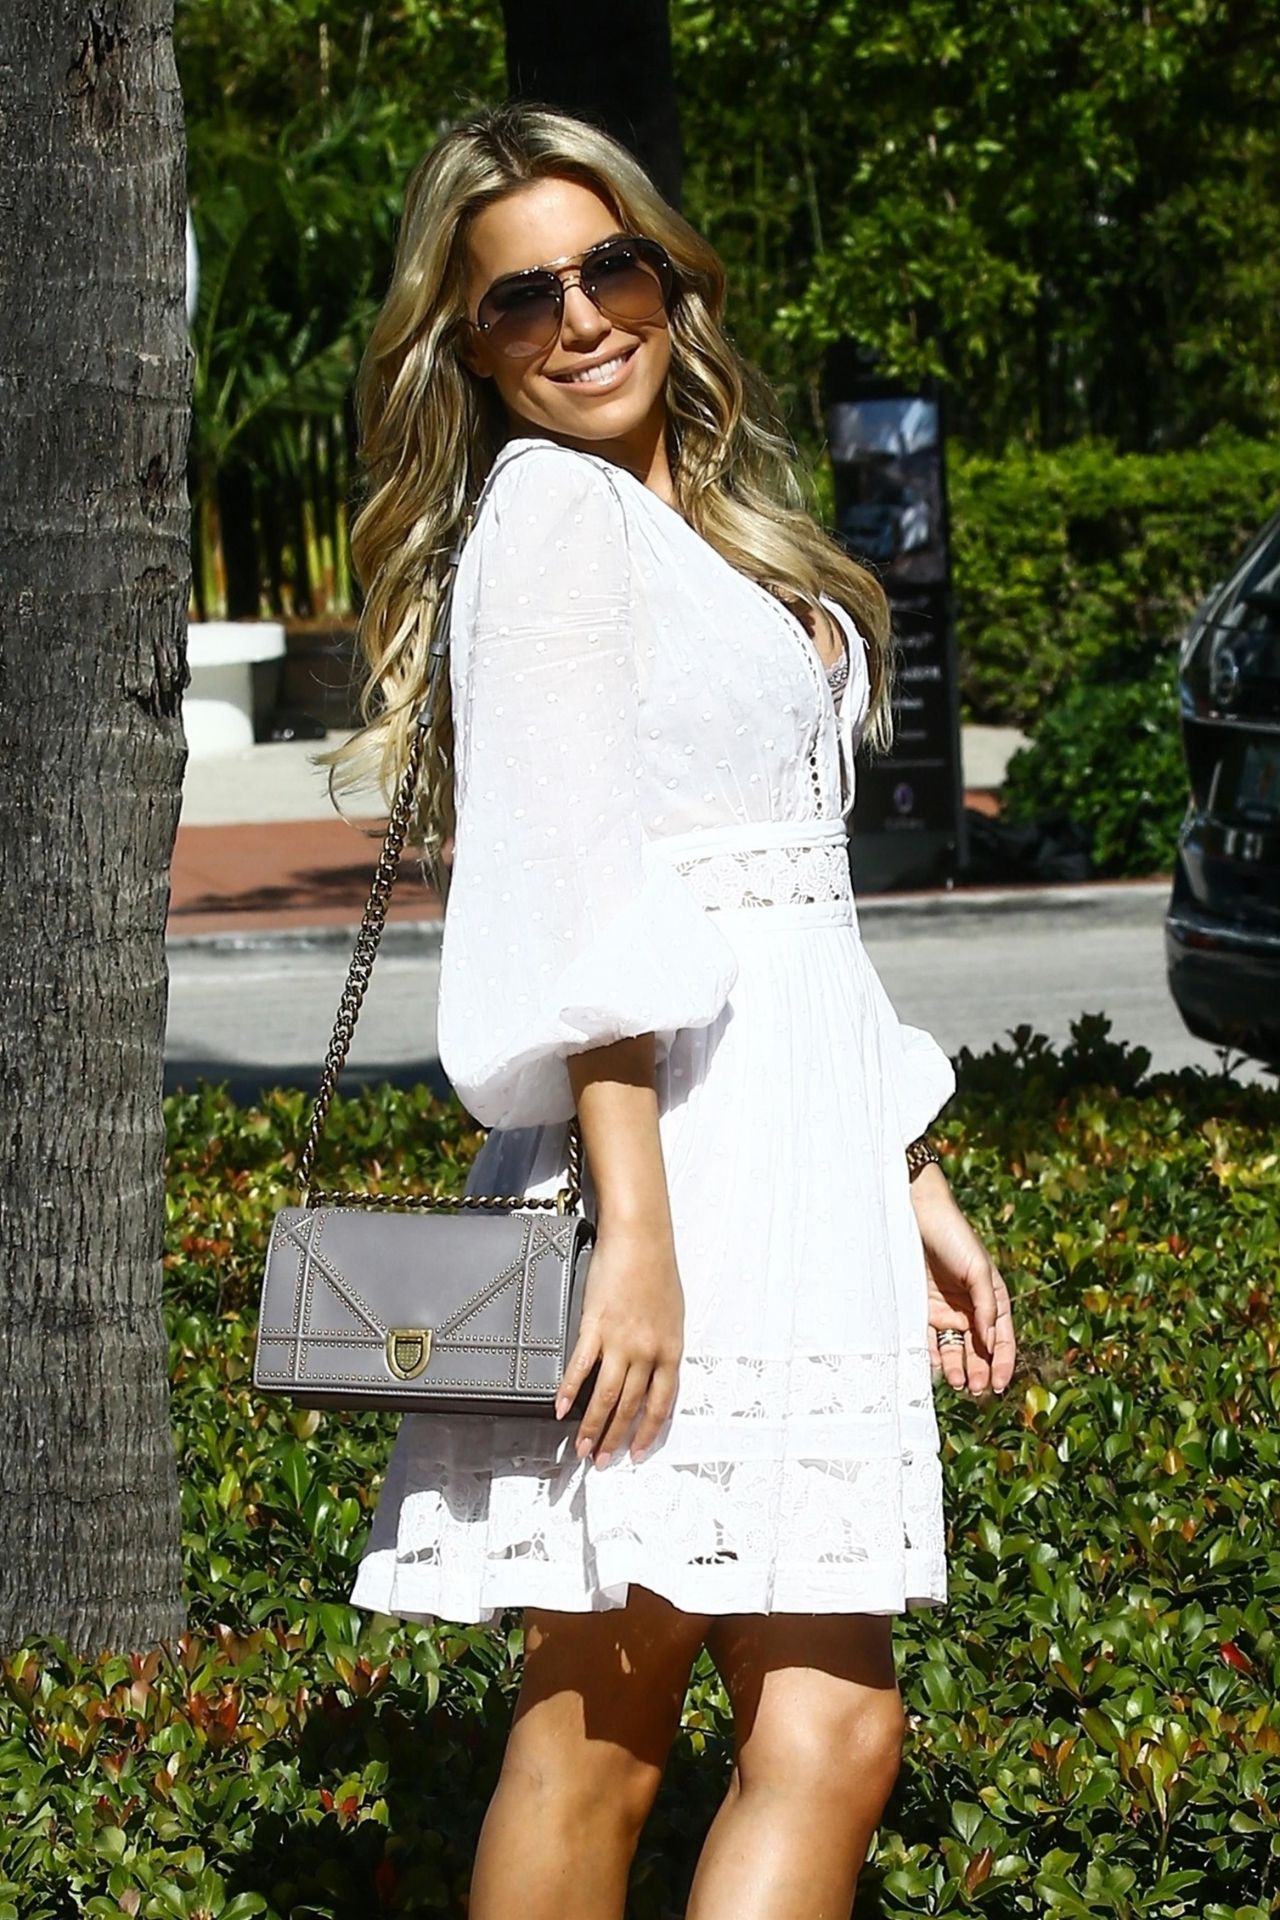 Sylvie Meis in a White Summer Dress in Miami • CelebMafia